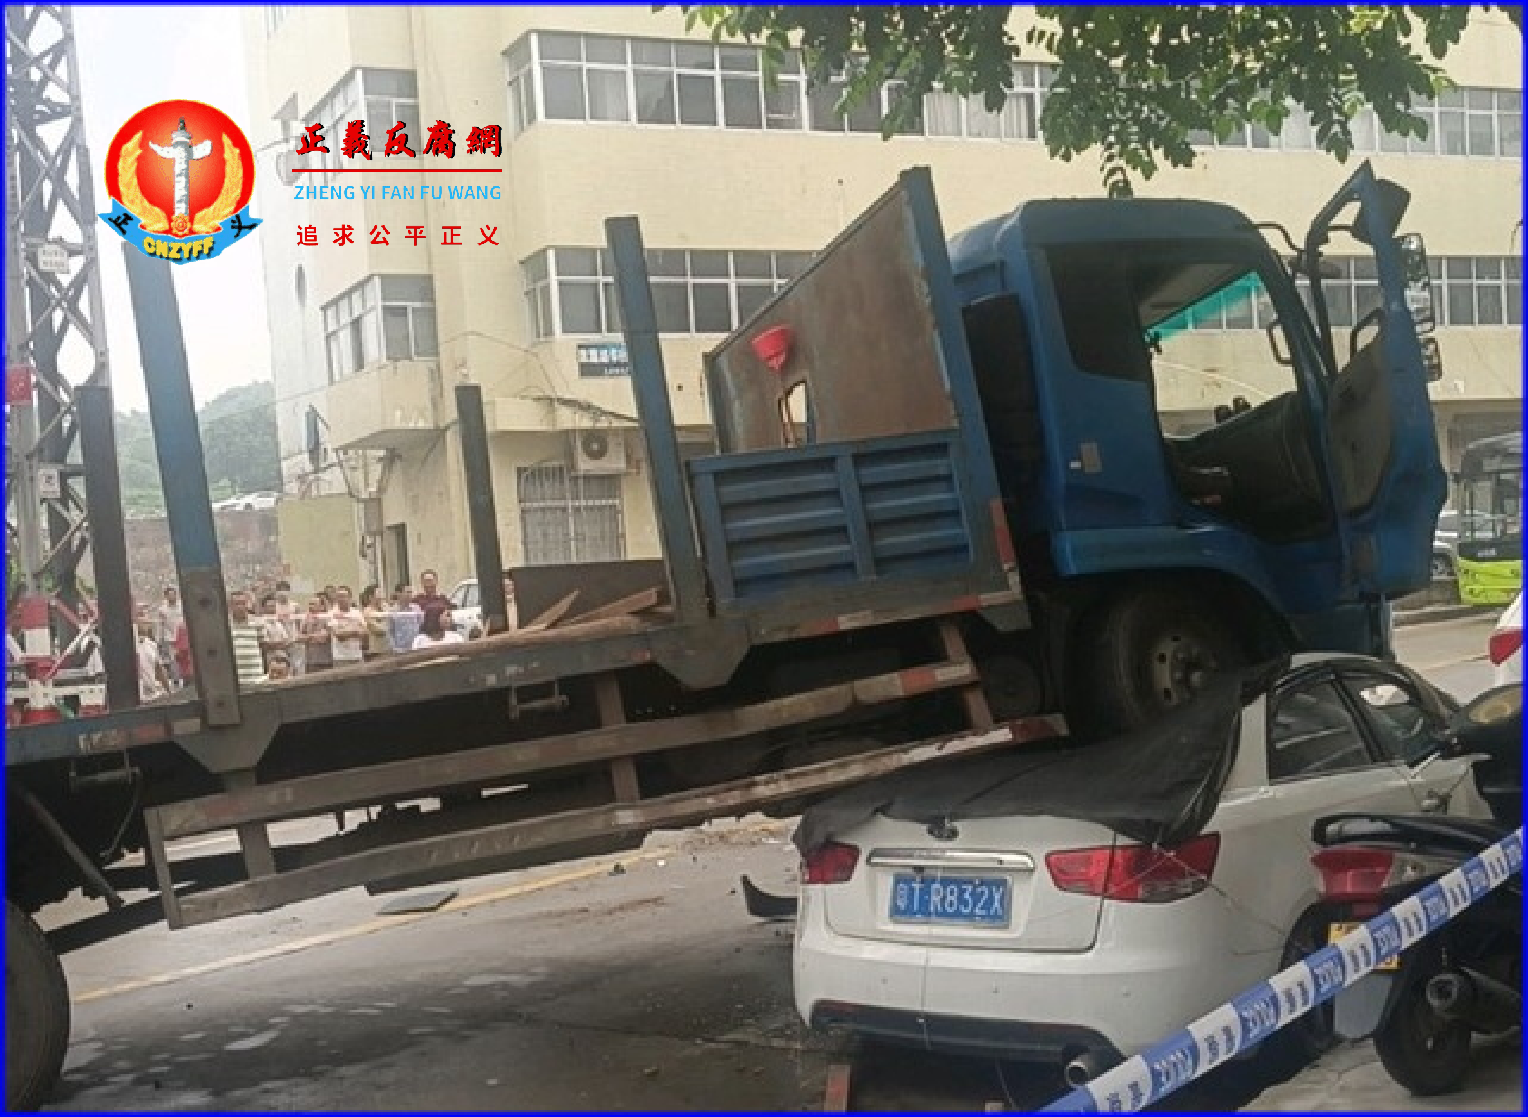 2023年5月12日，广东中山市大涌镇街上一名男子开铲车冲撞路边车辆与行人，造成多人死伤。..png